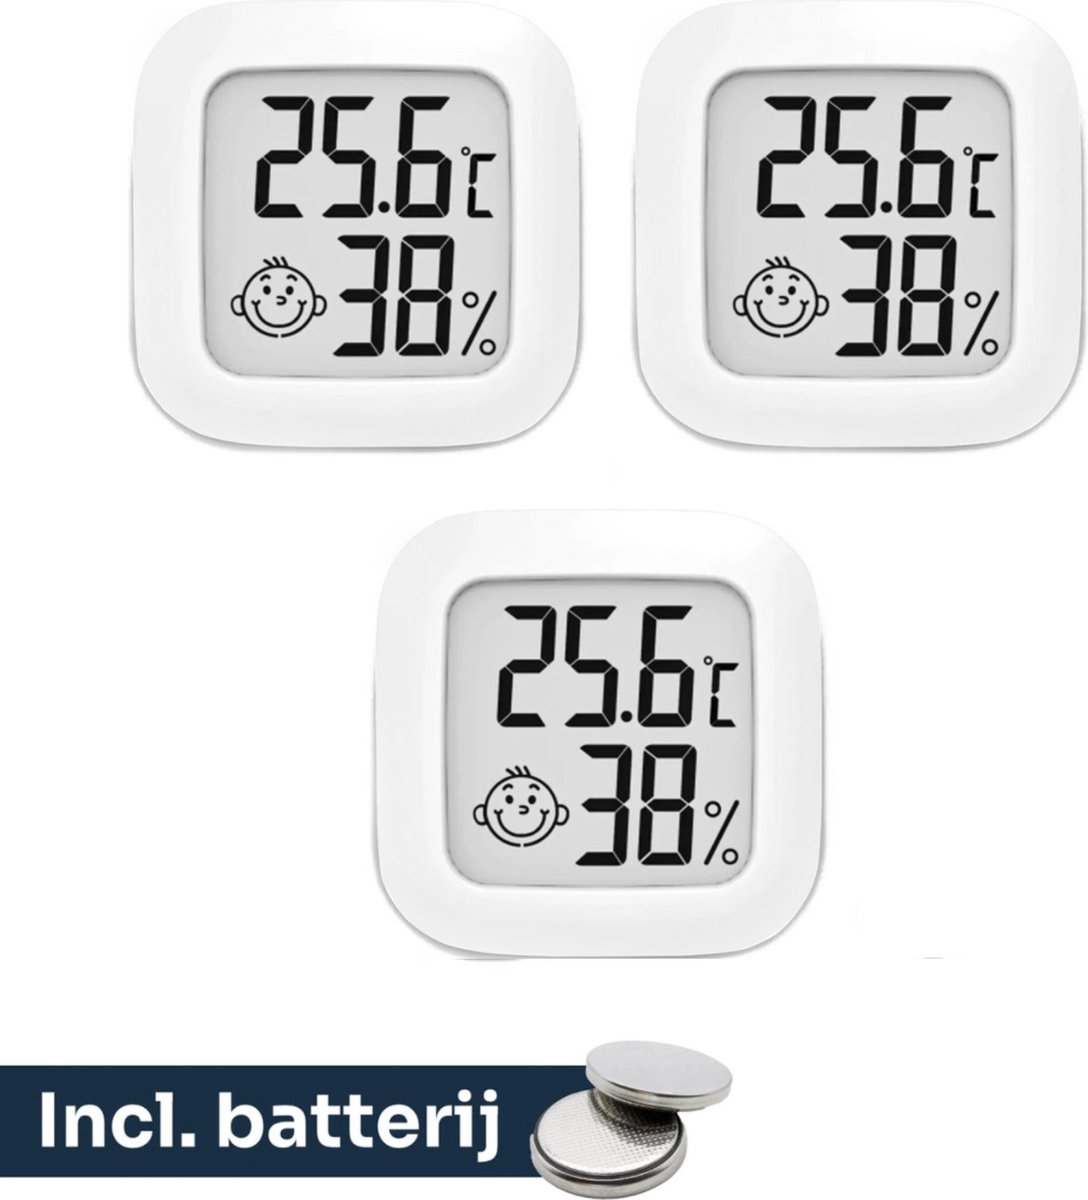 3x Estacks Hygrometer - Digitale Weerstation - Luchtvochtigheidsmeter - Thermometer Voor Binnen - Inclusief Batterij